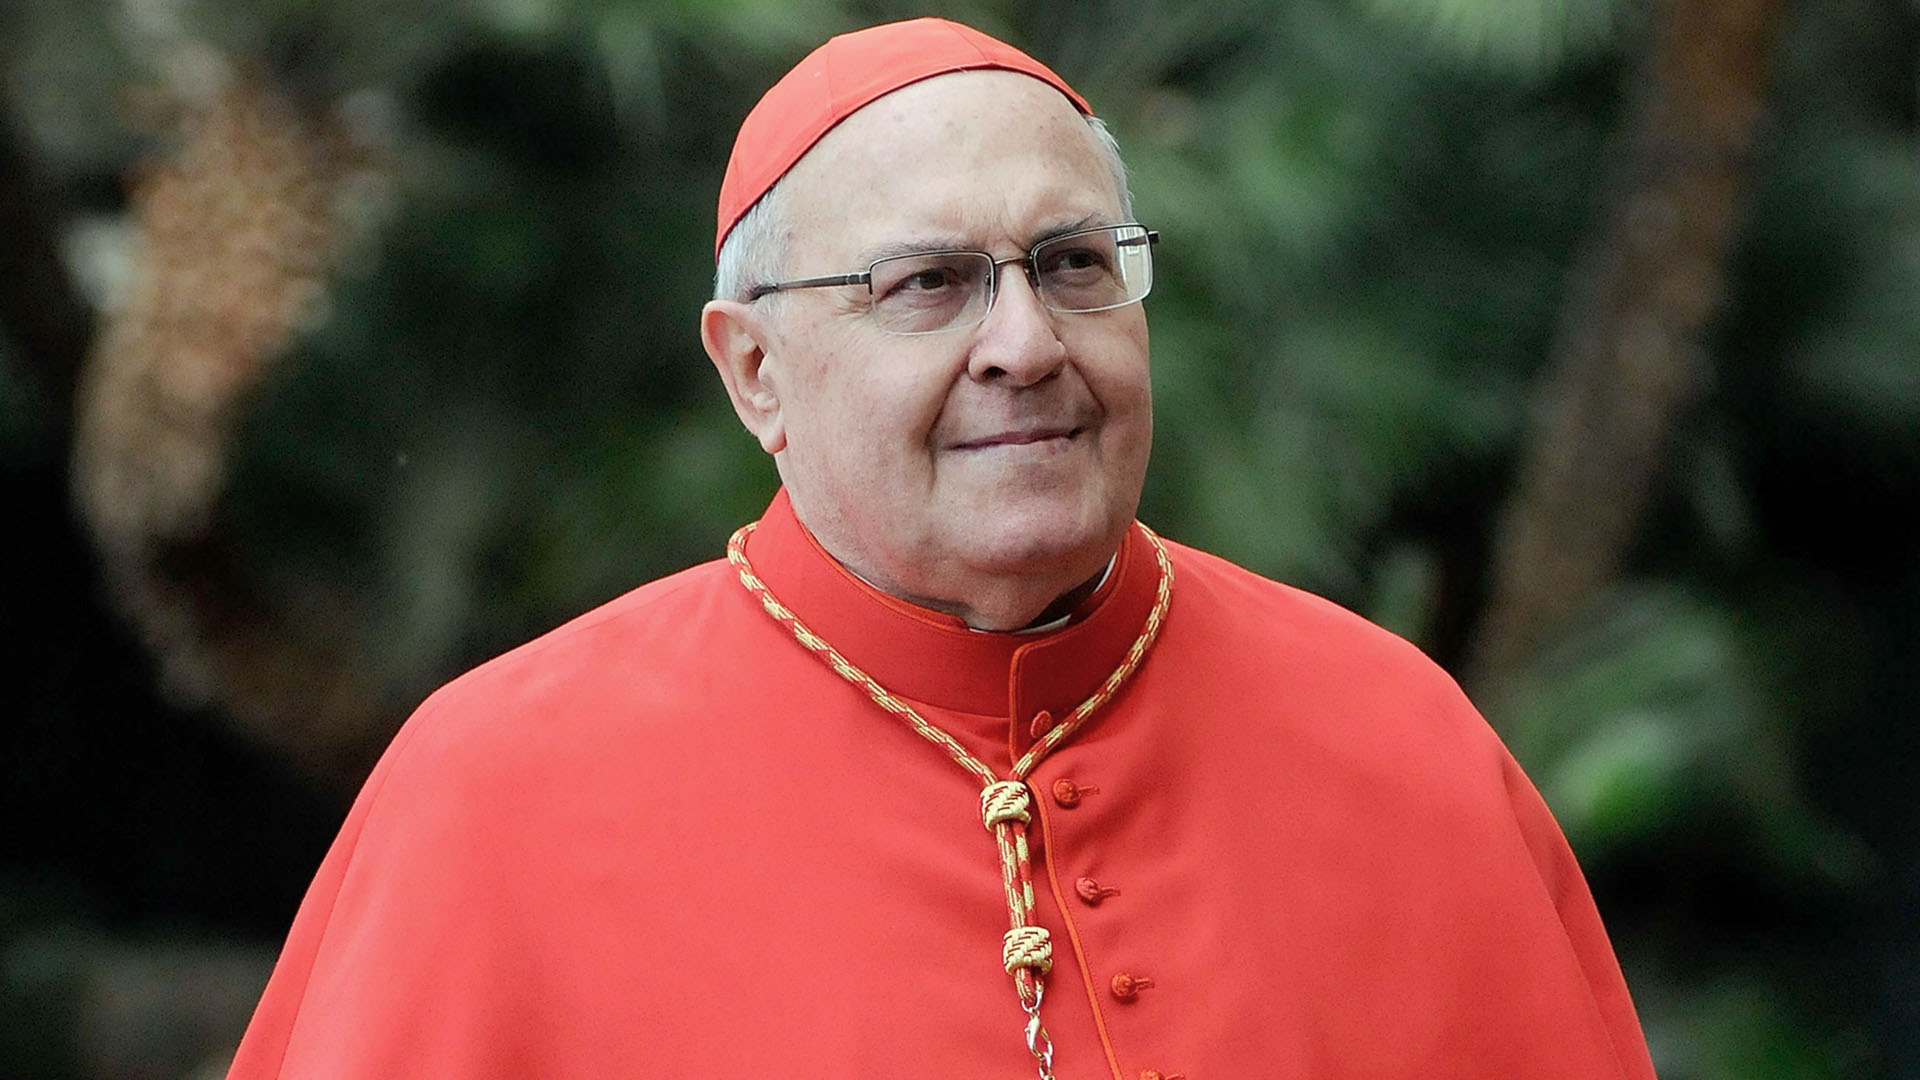 Murió el influyente cardenal Angelo Sodano, ex secretario de Estado vaticano